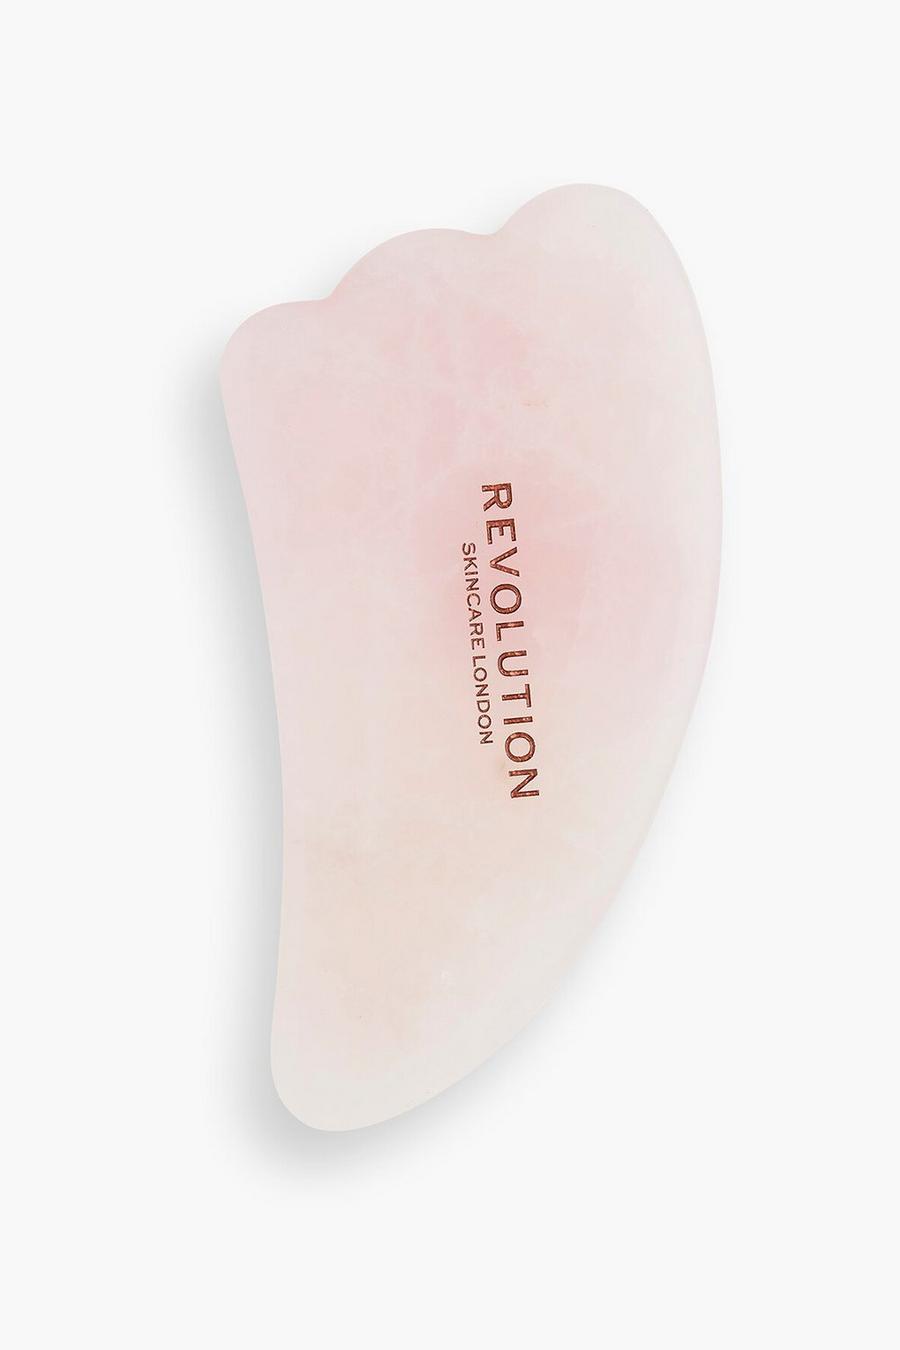 Revolution Skincare - Gua sha en quartz rose, Pink rose image number 1